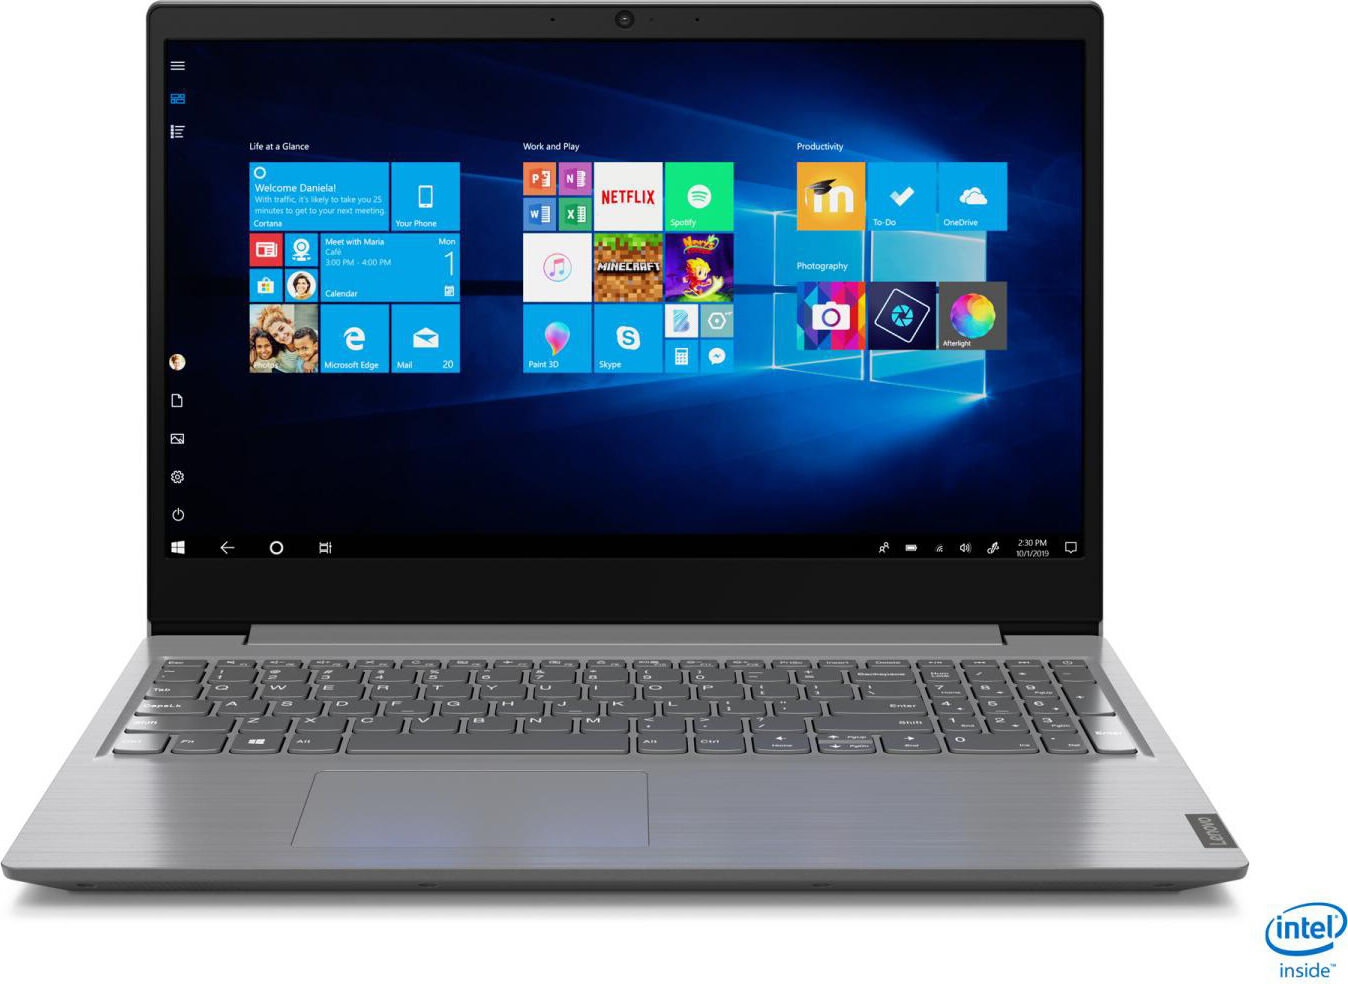 Lenovo 82c500jtix Notebook 15,6" Intel Core I3 Ram 4 Gb Ssd 256 Gb Display Full Hd Windows 10 - 82c500jtix